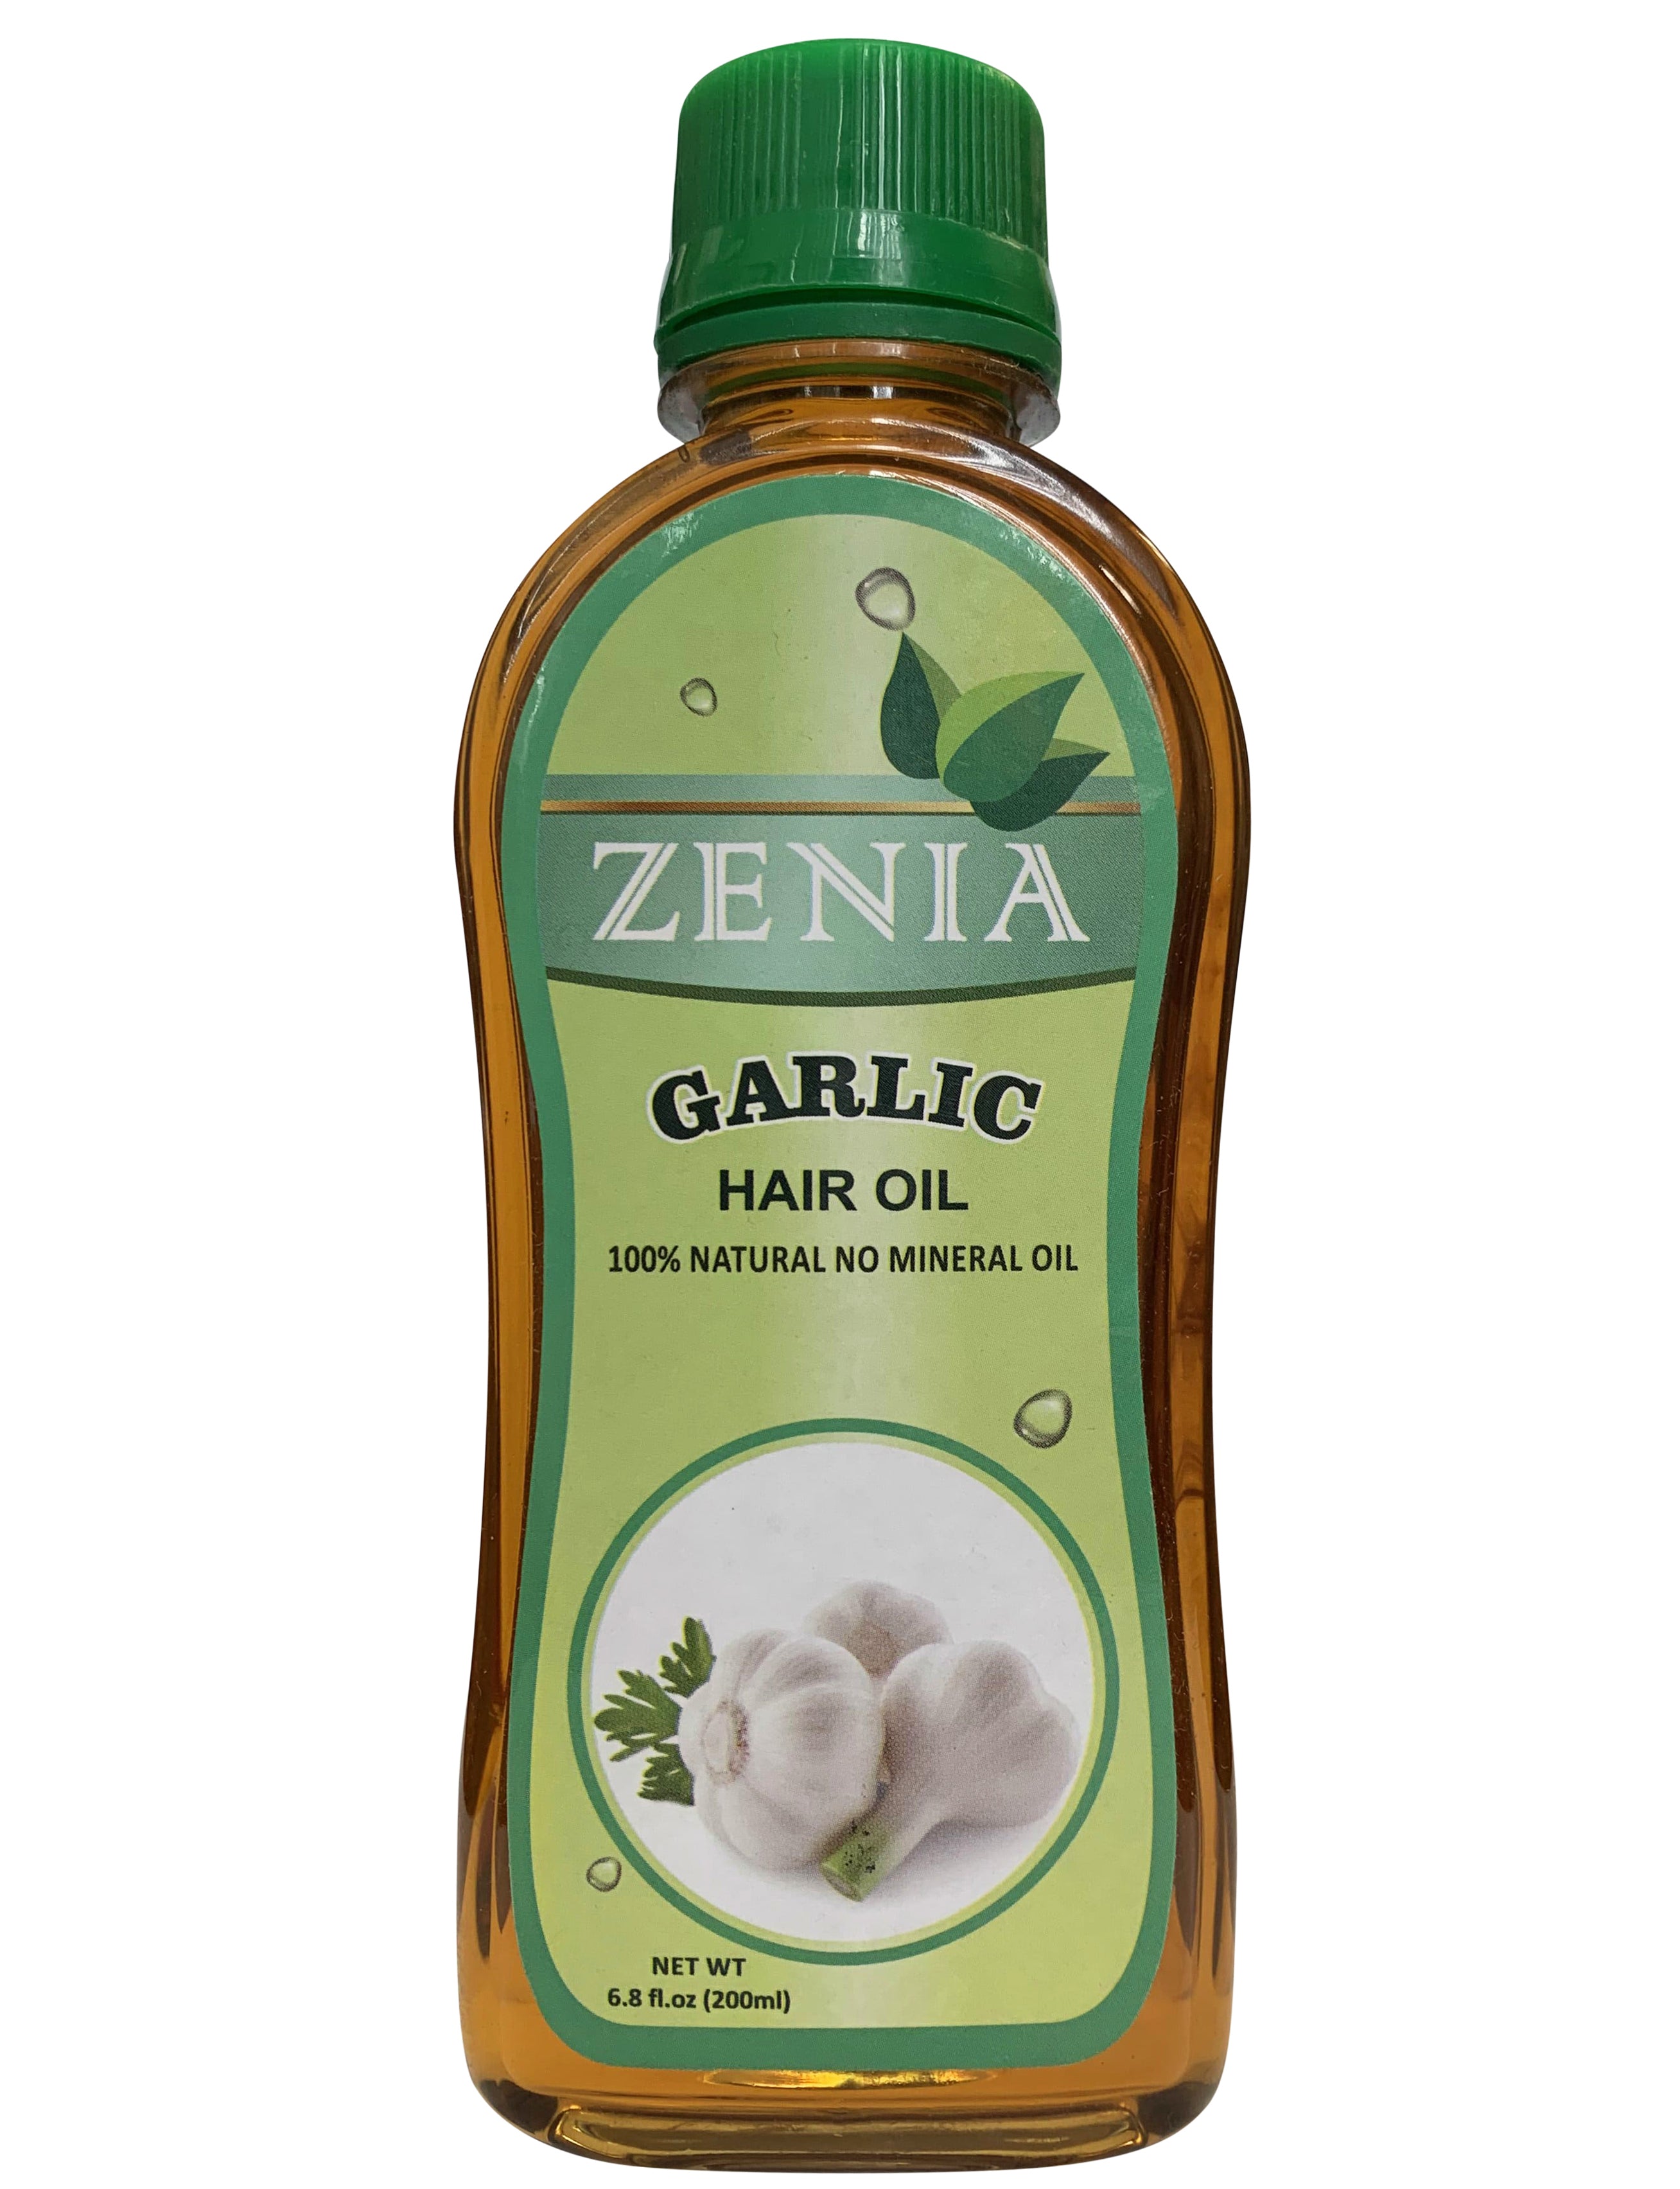 Zenia Garlic Hair Oil 100% Natural No Mineral Oil 200ml